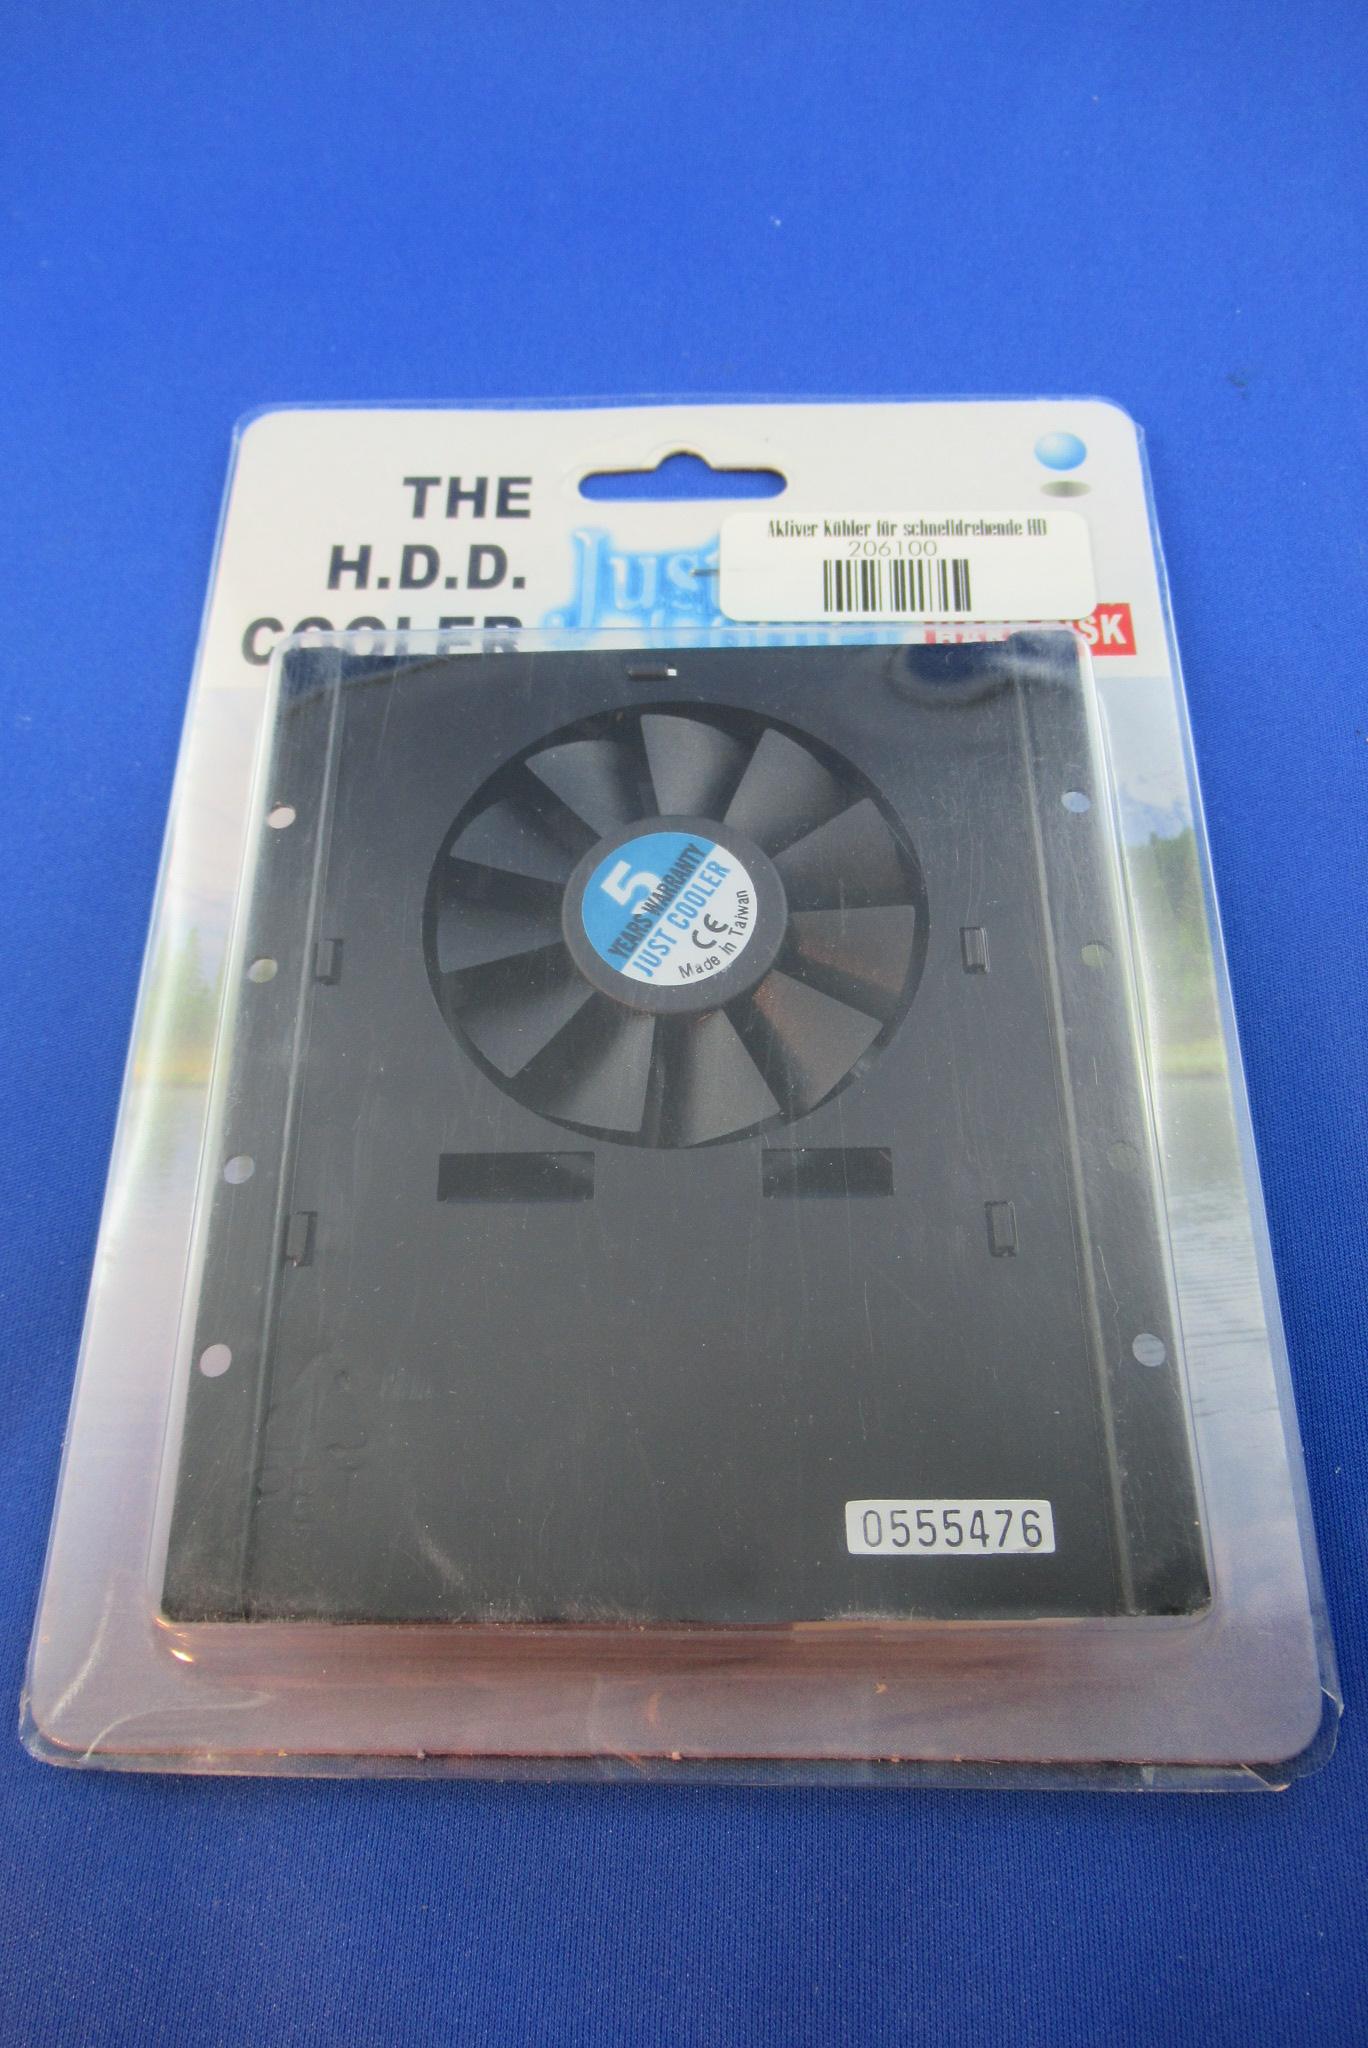 Aktiver Kühler für schnelldrehende Festplatten HD-600